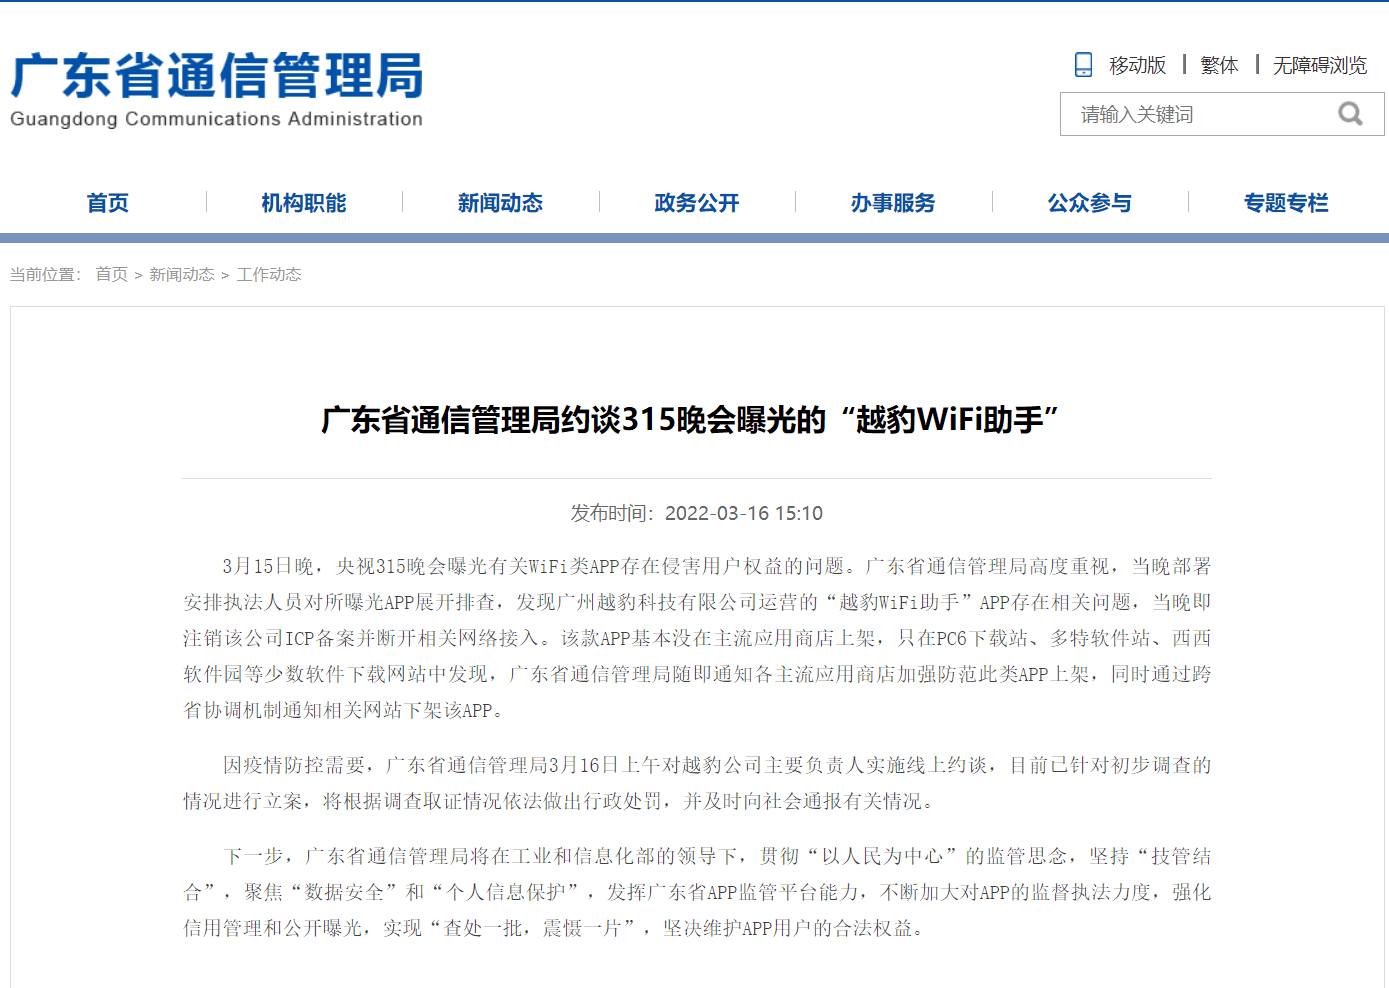 广东省通信管理局约谈315晚会曝光的“越豹WiFi助手”